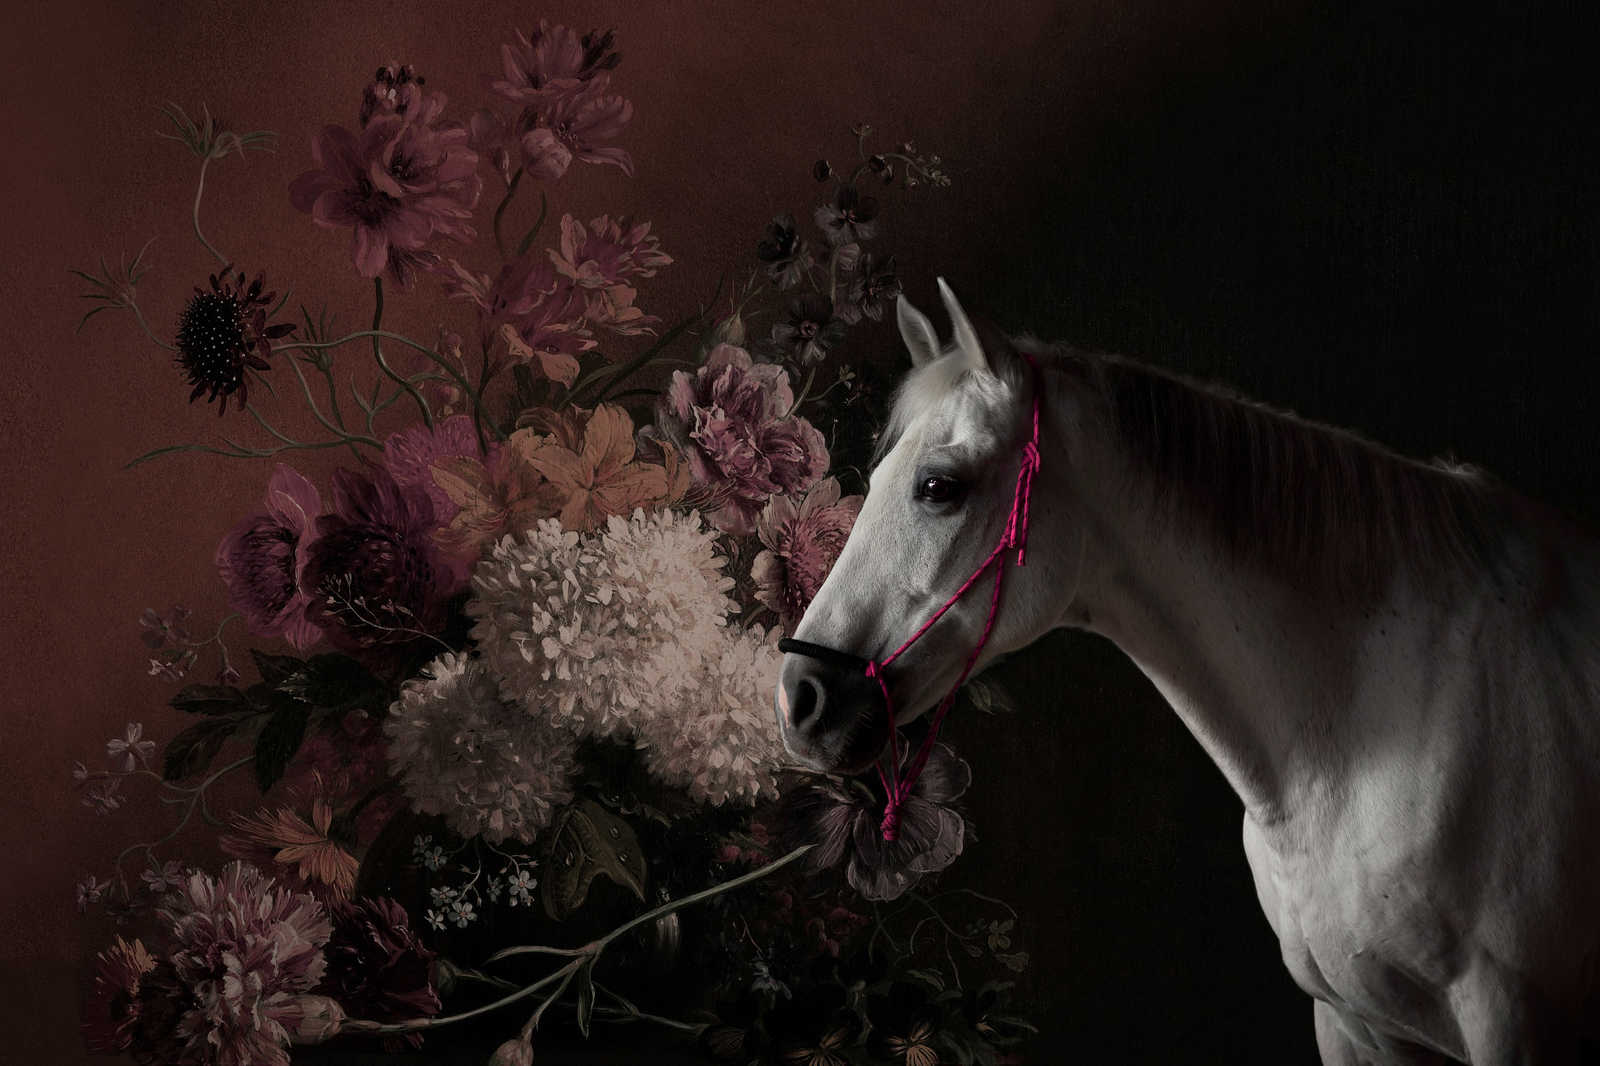             Cuadro en lienzo Retrato de caballo con flores - 0,90 m x 0,60 m
        